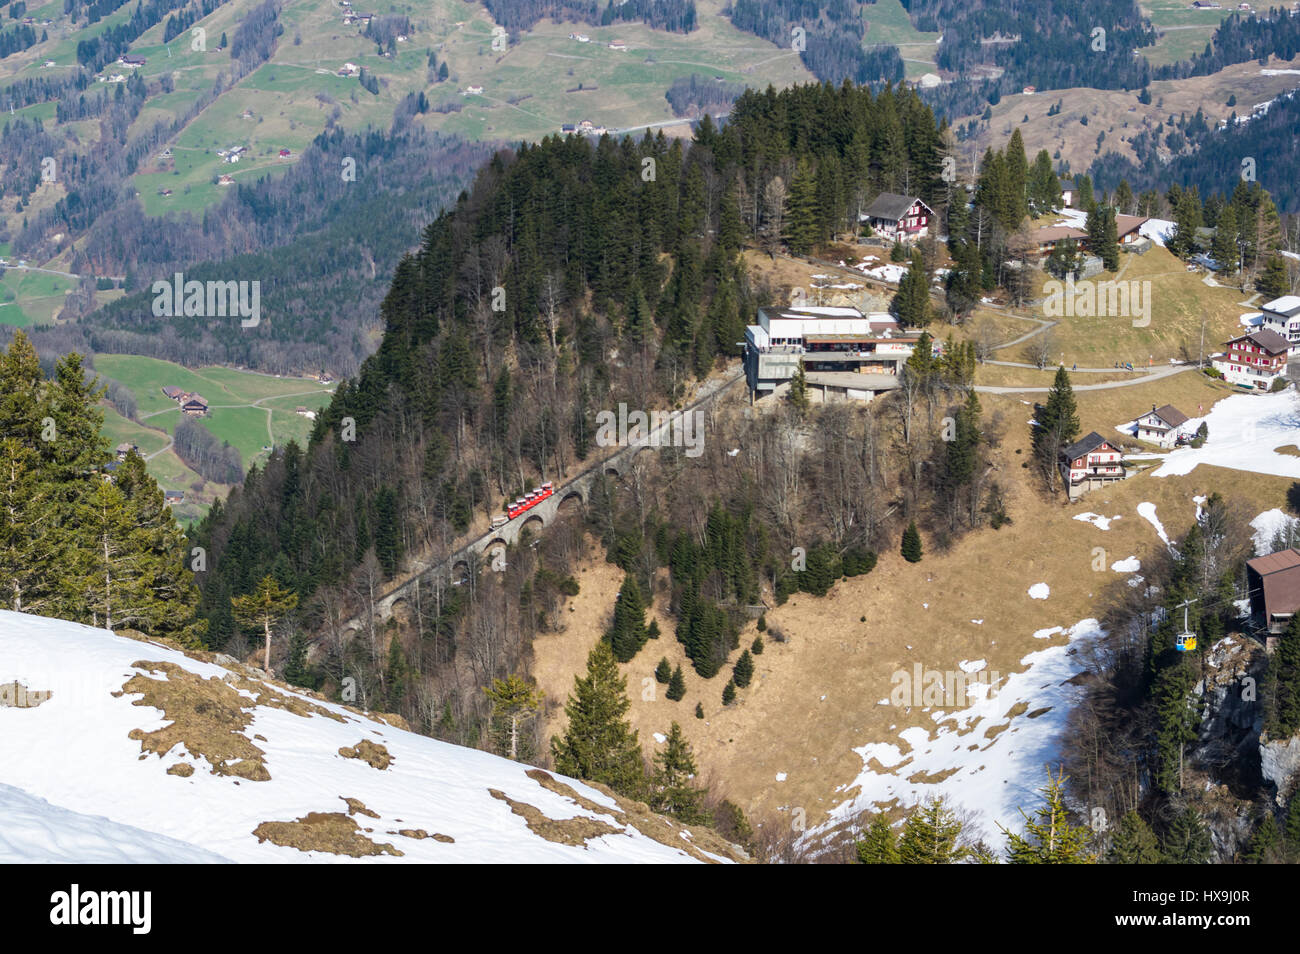 Rote Standseilbahn und gelbe Seilbahn Ankunft in ihren jeweiligen Bergstationen in Stoos, einem Bergdorf in der Zentralschweiz. Stockfoto